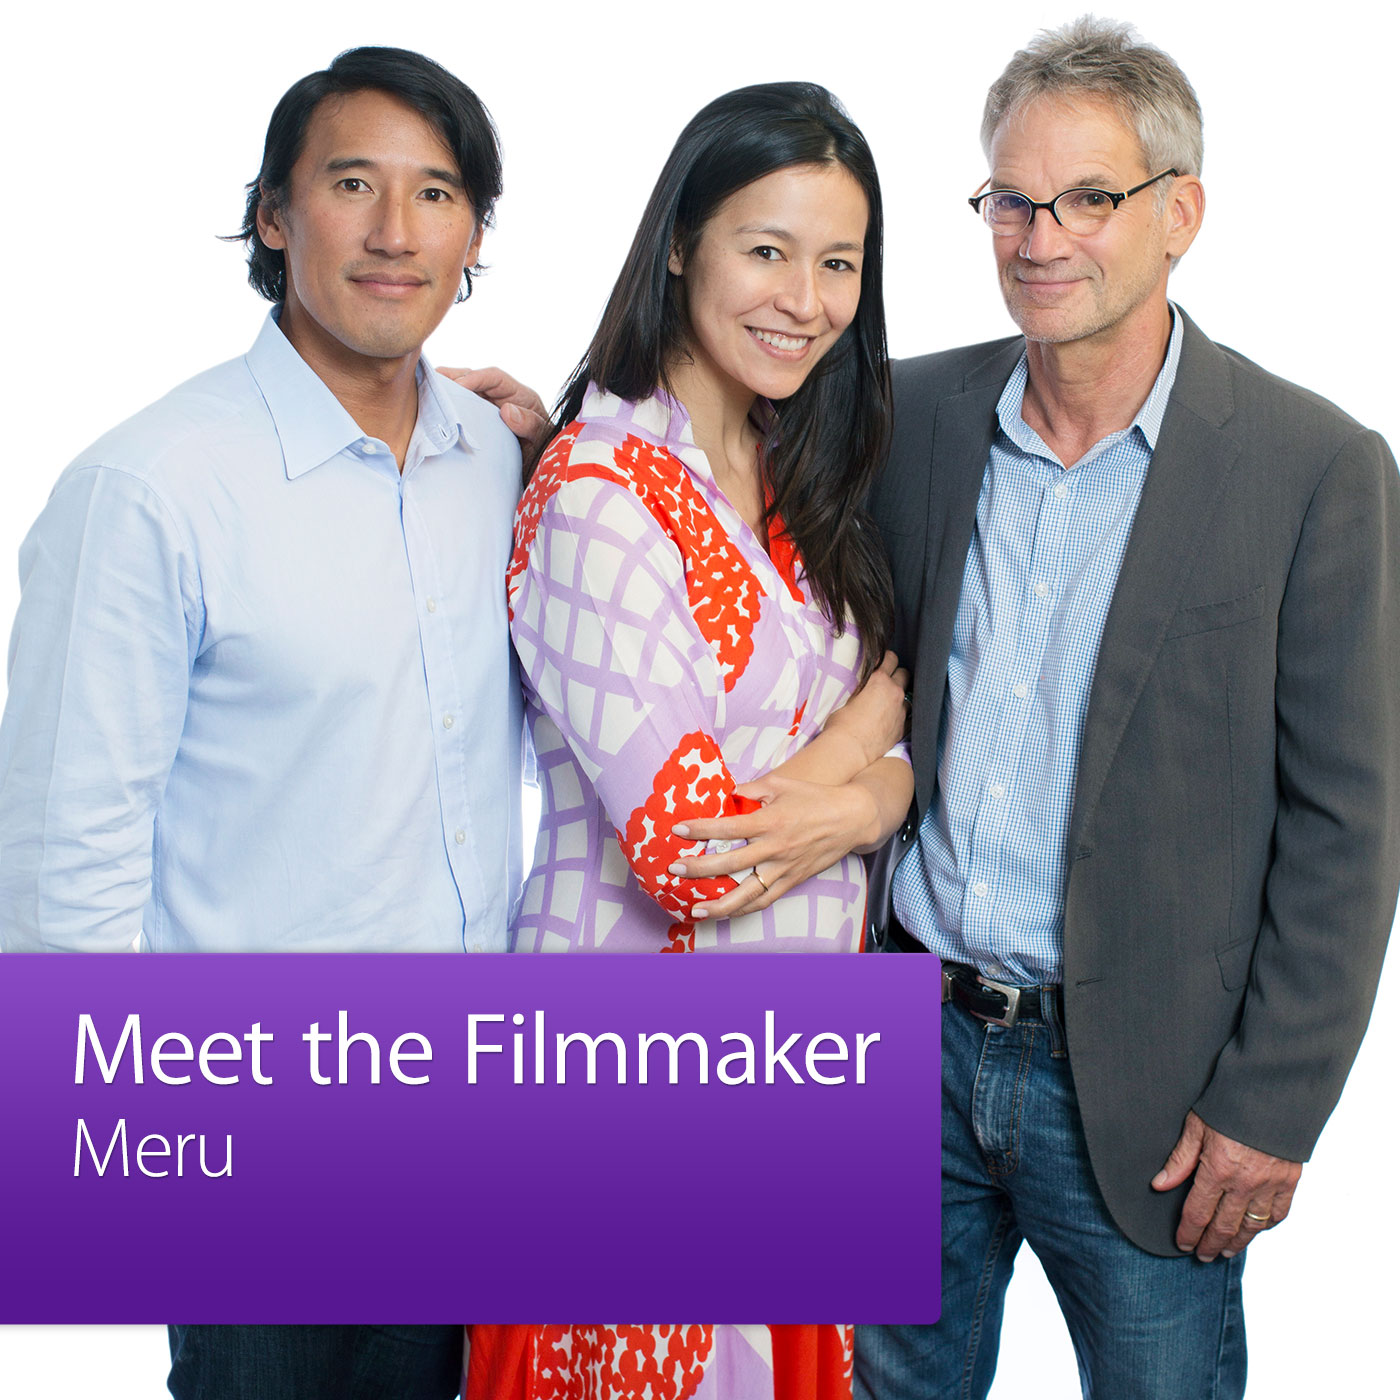 Meru: Meet the Filmmaker